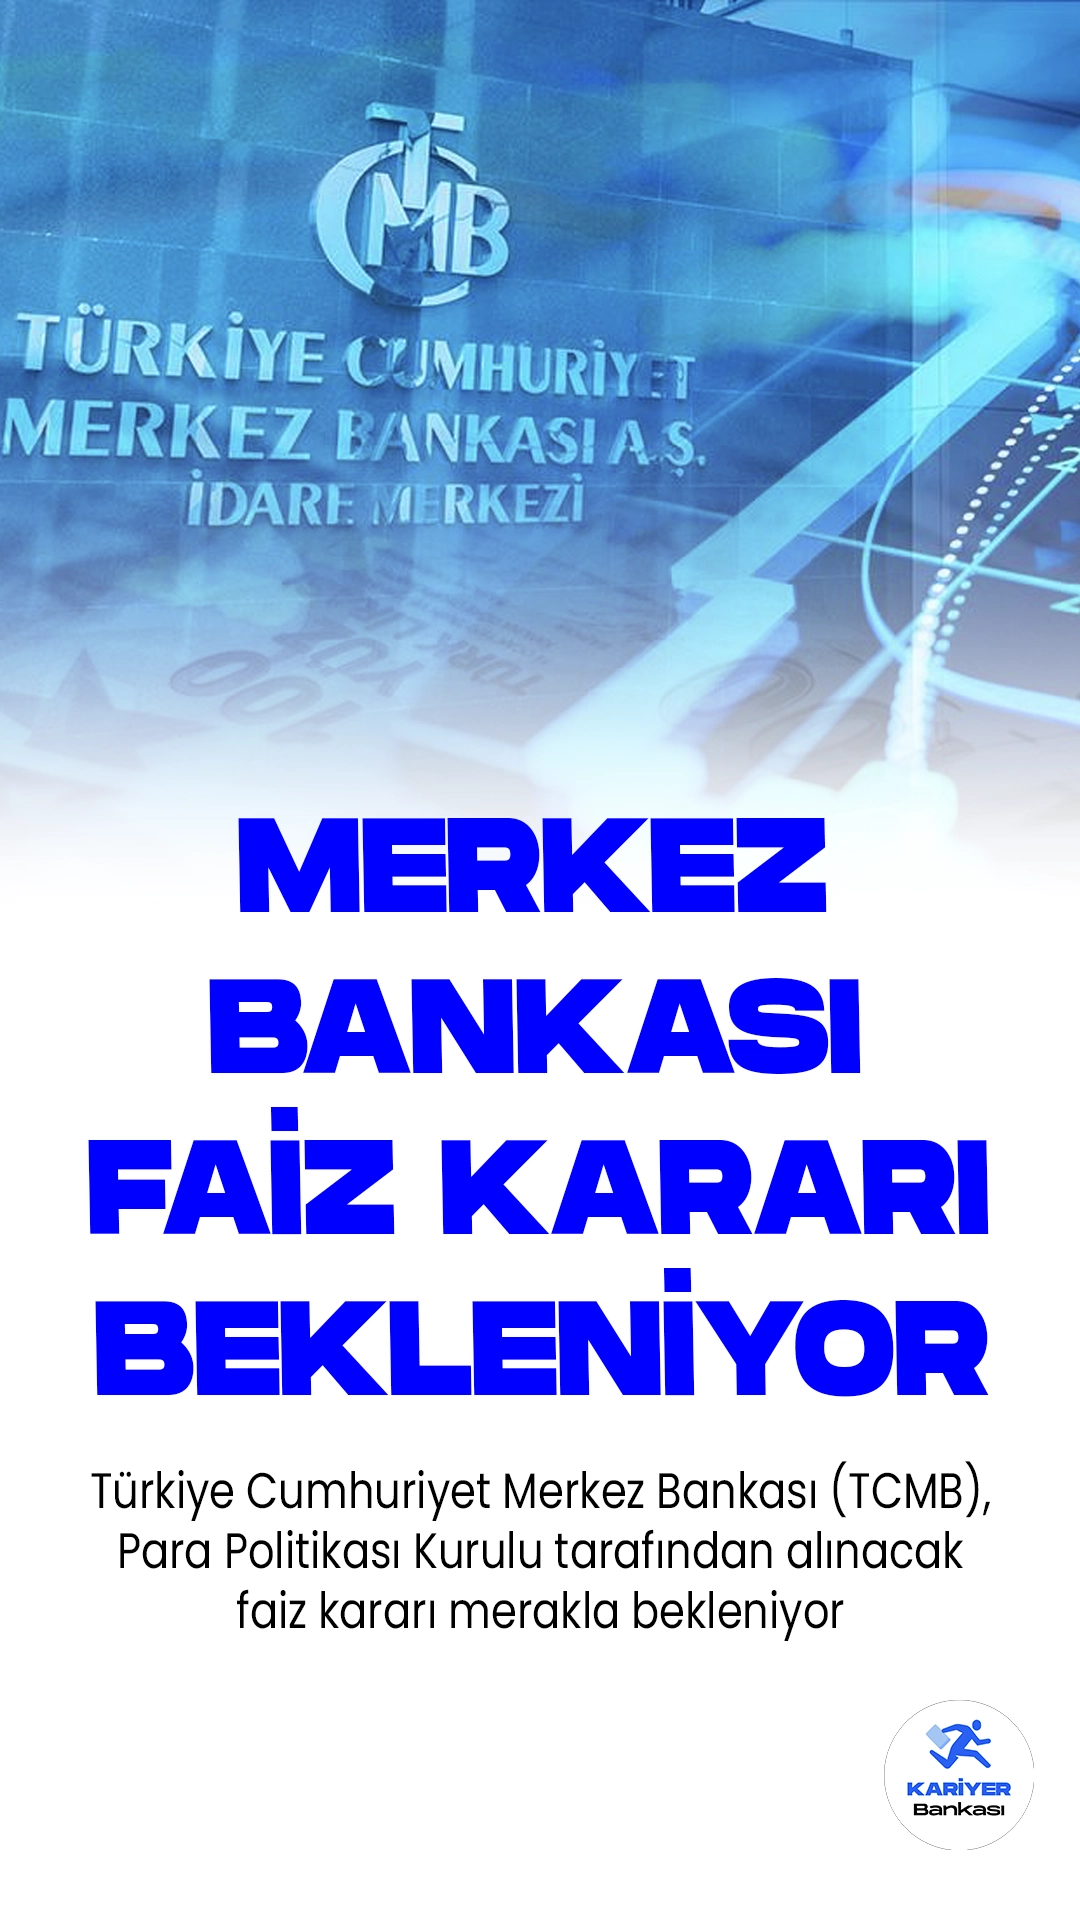 Merkez Bankası Faiz Kararı Bekleniyor.Türkiye Cumhuriyet Merkez Bankası (TCMB), Para Politikası Kurulu tarafından alınacak faiz kararı merakla bekleniyor. TCMB, Merkez Bankası Başkanı Hafize Gaye Erkan'ın liderliğindeki kurul, 24 Ağustos Perşembe günü toplanacak.